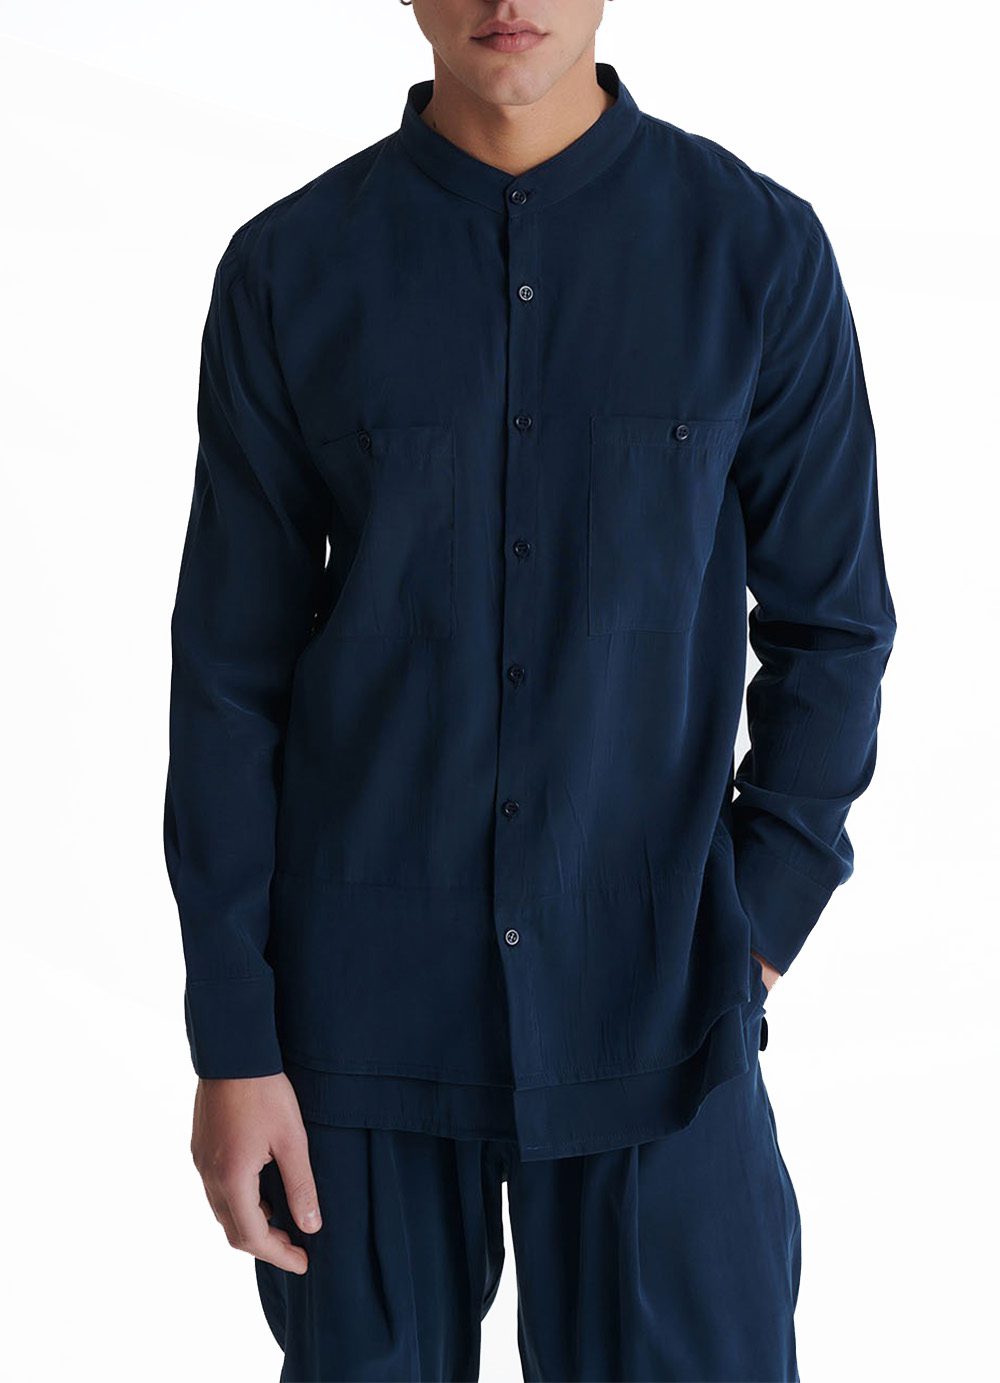 Ανδρικό πουκάμισο P/COC P-1608 Μπλε